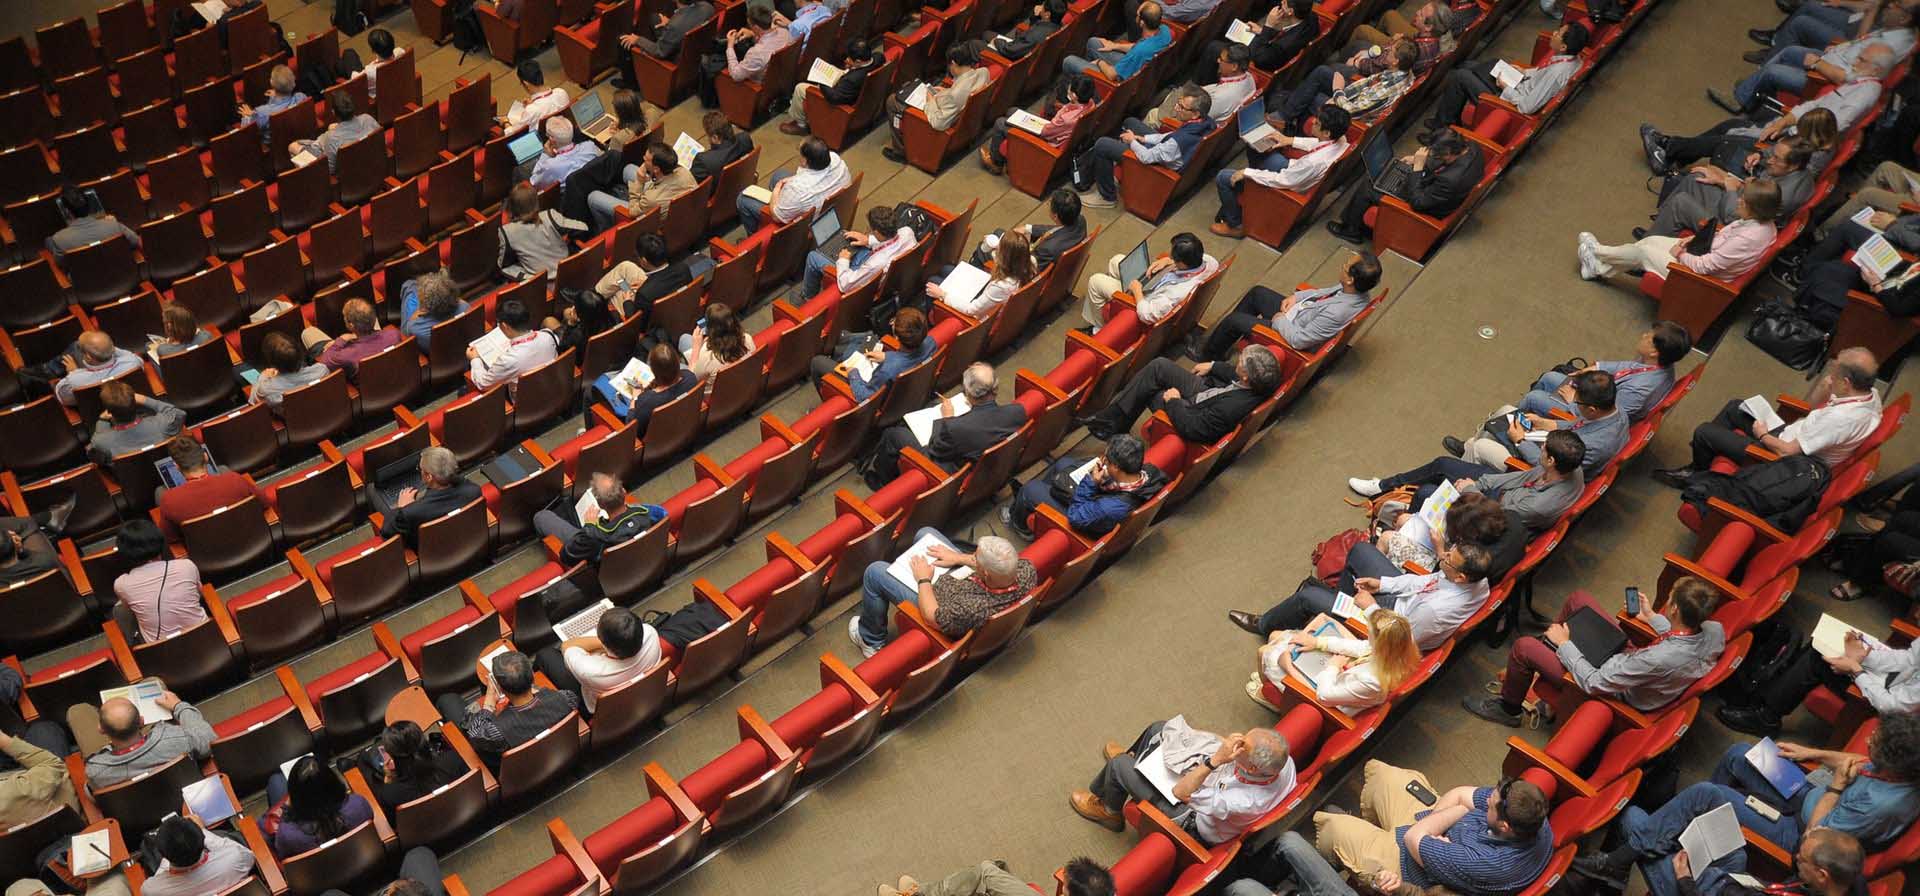 https://pixabay.com/photos/event-auditorium-conference-1597531/ 